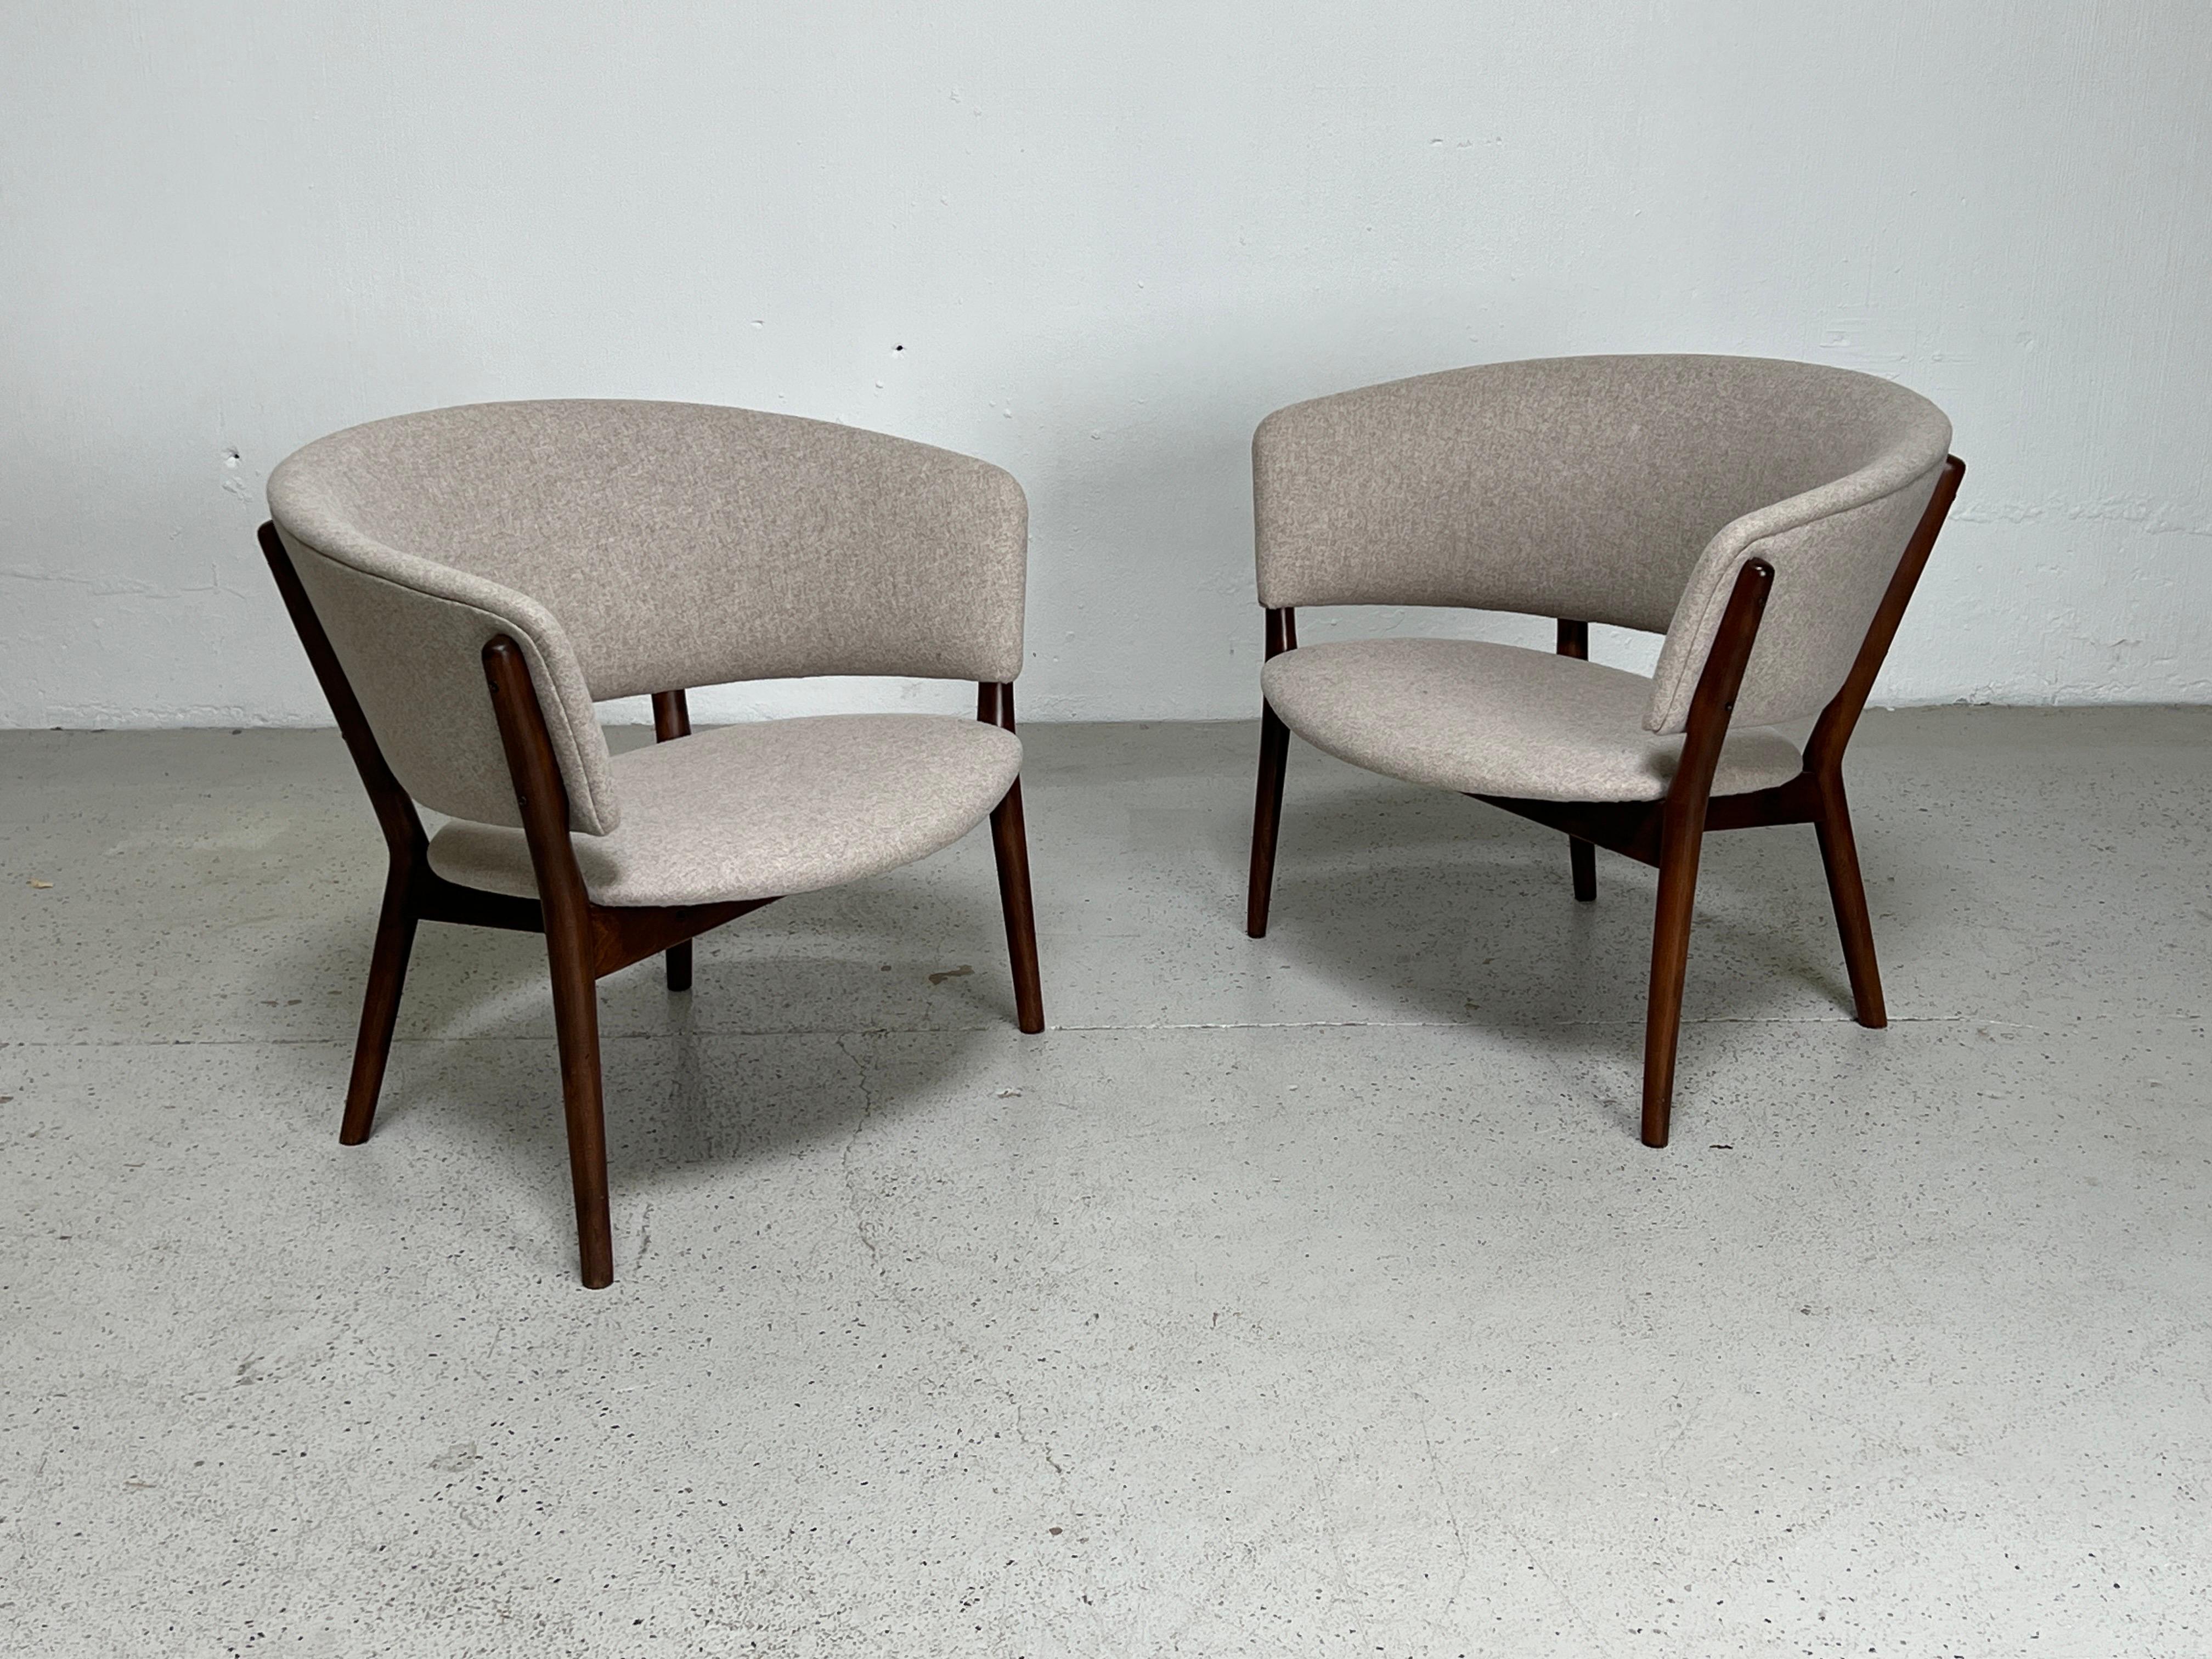 Une paire de chaises longues conçues par Nanna Ditzel.